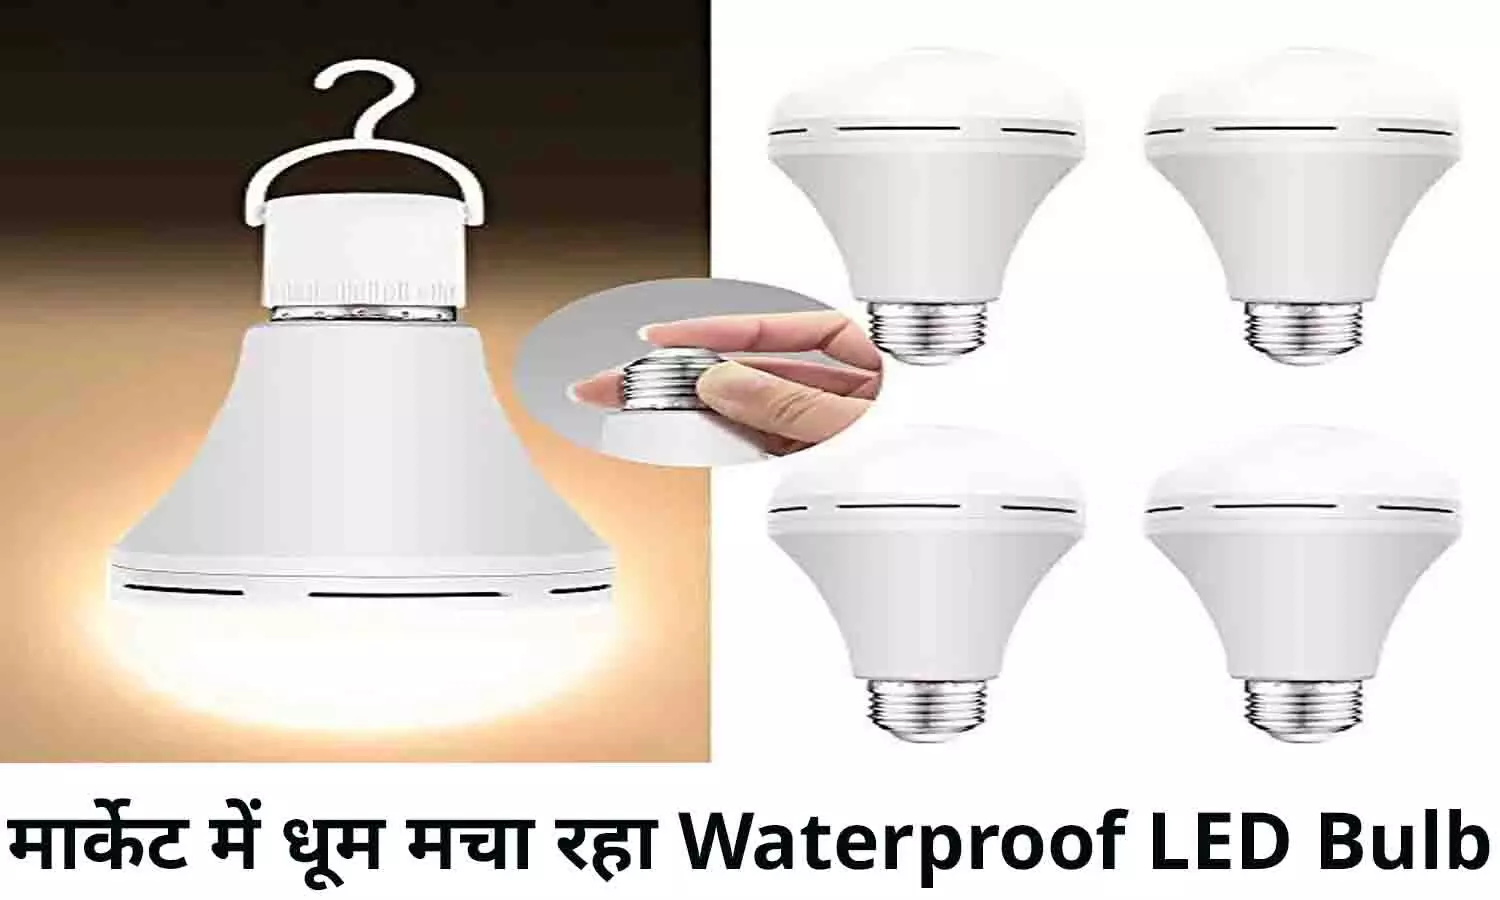 LED Bulb 2022: मार्केट में धूम मचा रहा Waterproof LED Bulb, पानी गिरे, लाइट गुल हो या बिजली चमके, नहीं होगा ये बल्ब बंद, फटाफट खरीदे